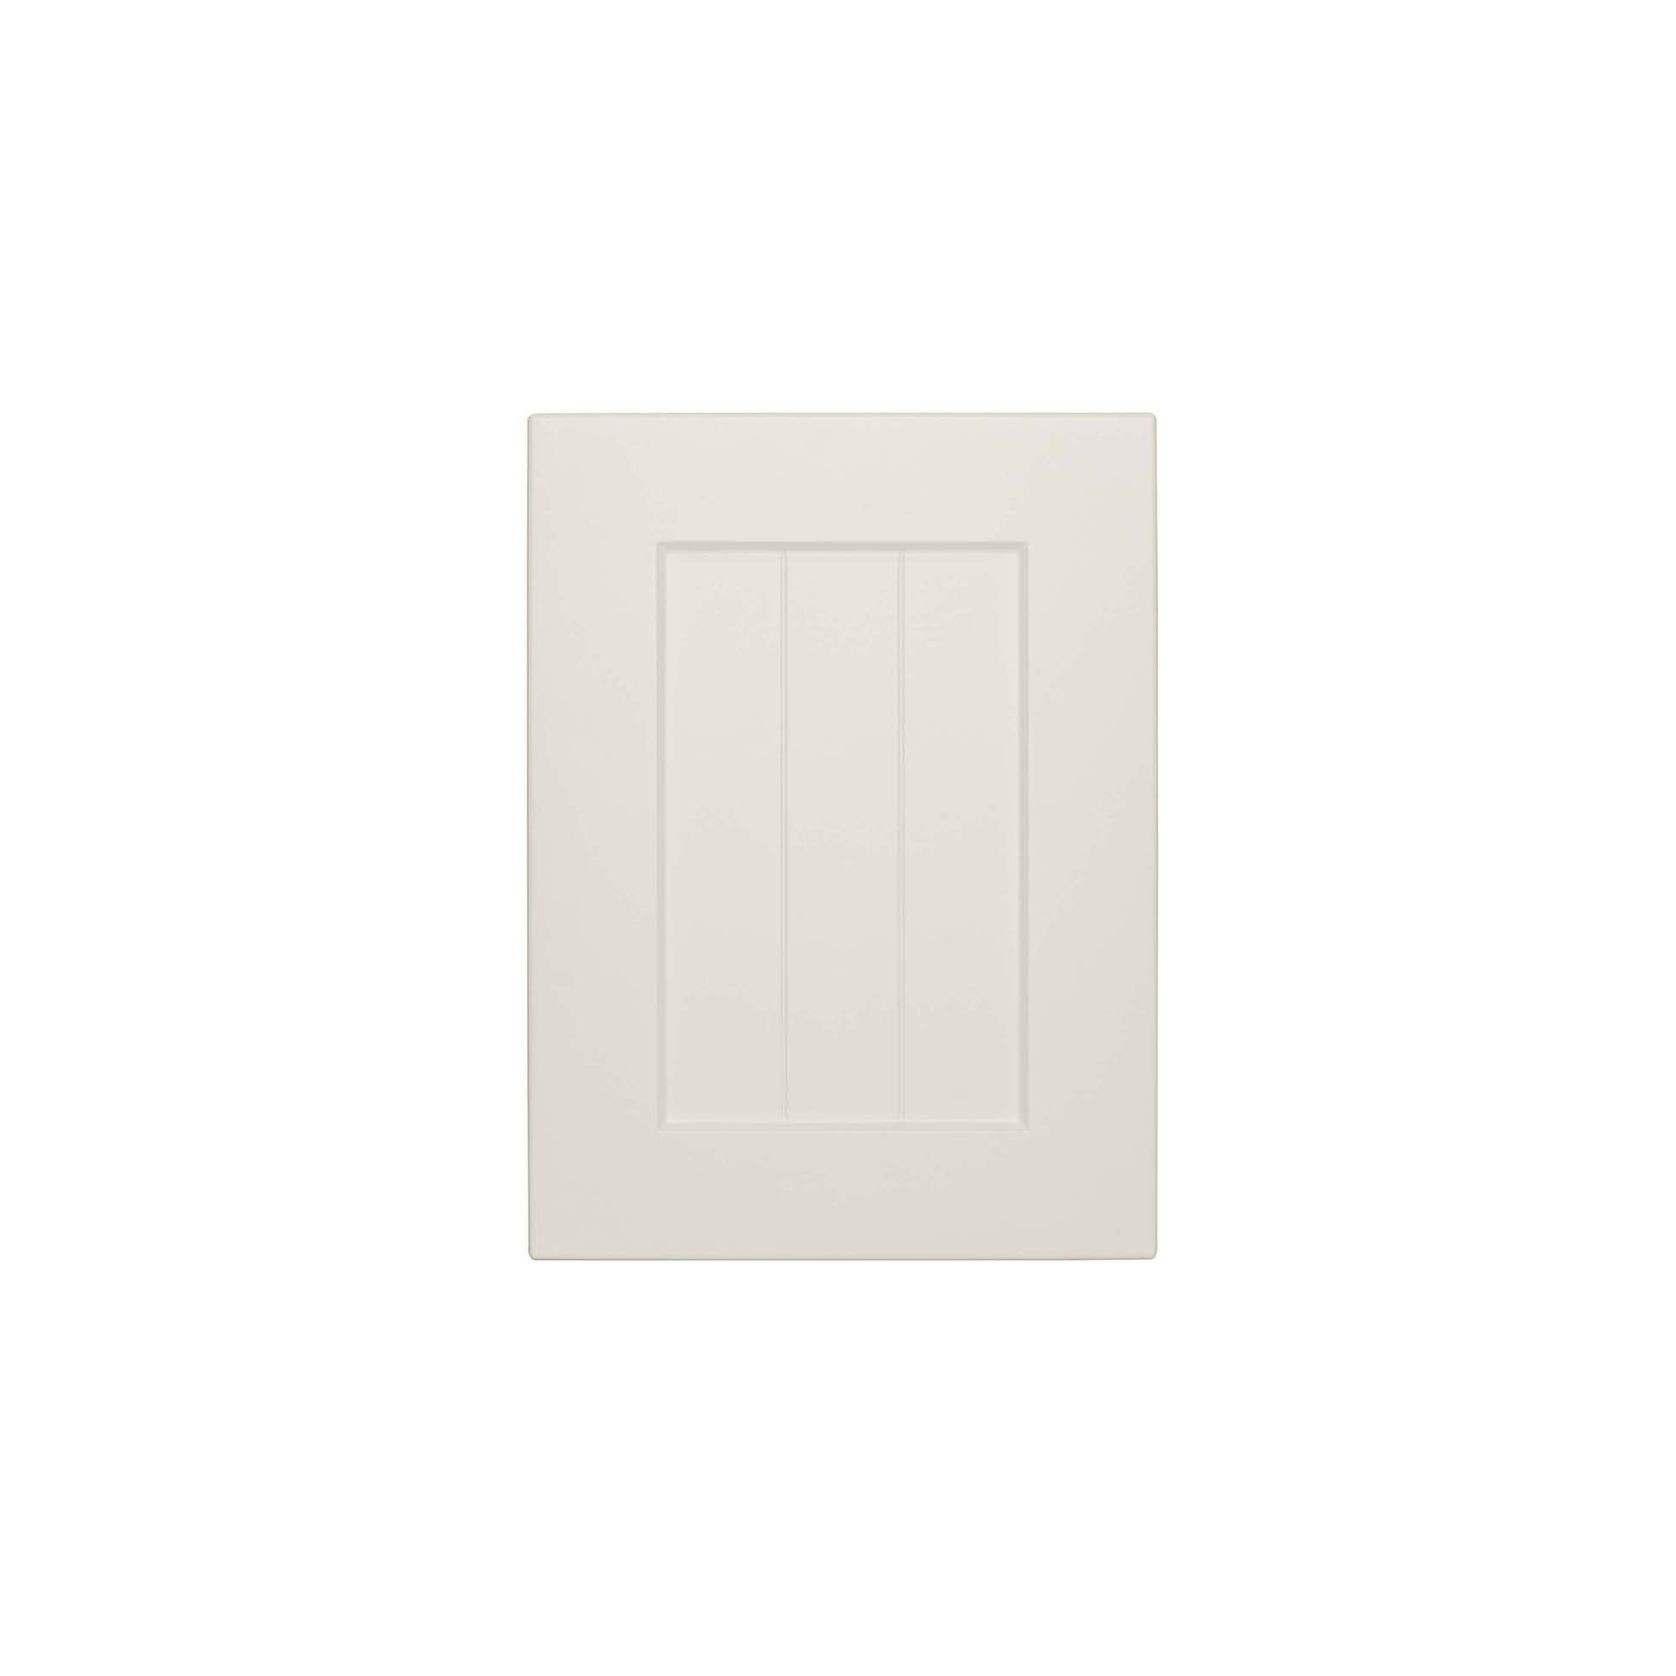 Durostyle Platinum Series - Derwent Kitchen Cabinet Doors gallery detail image